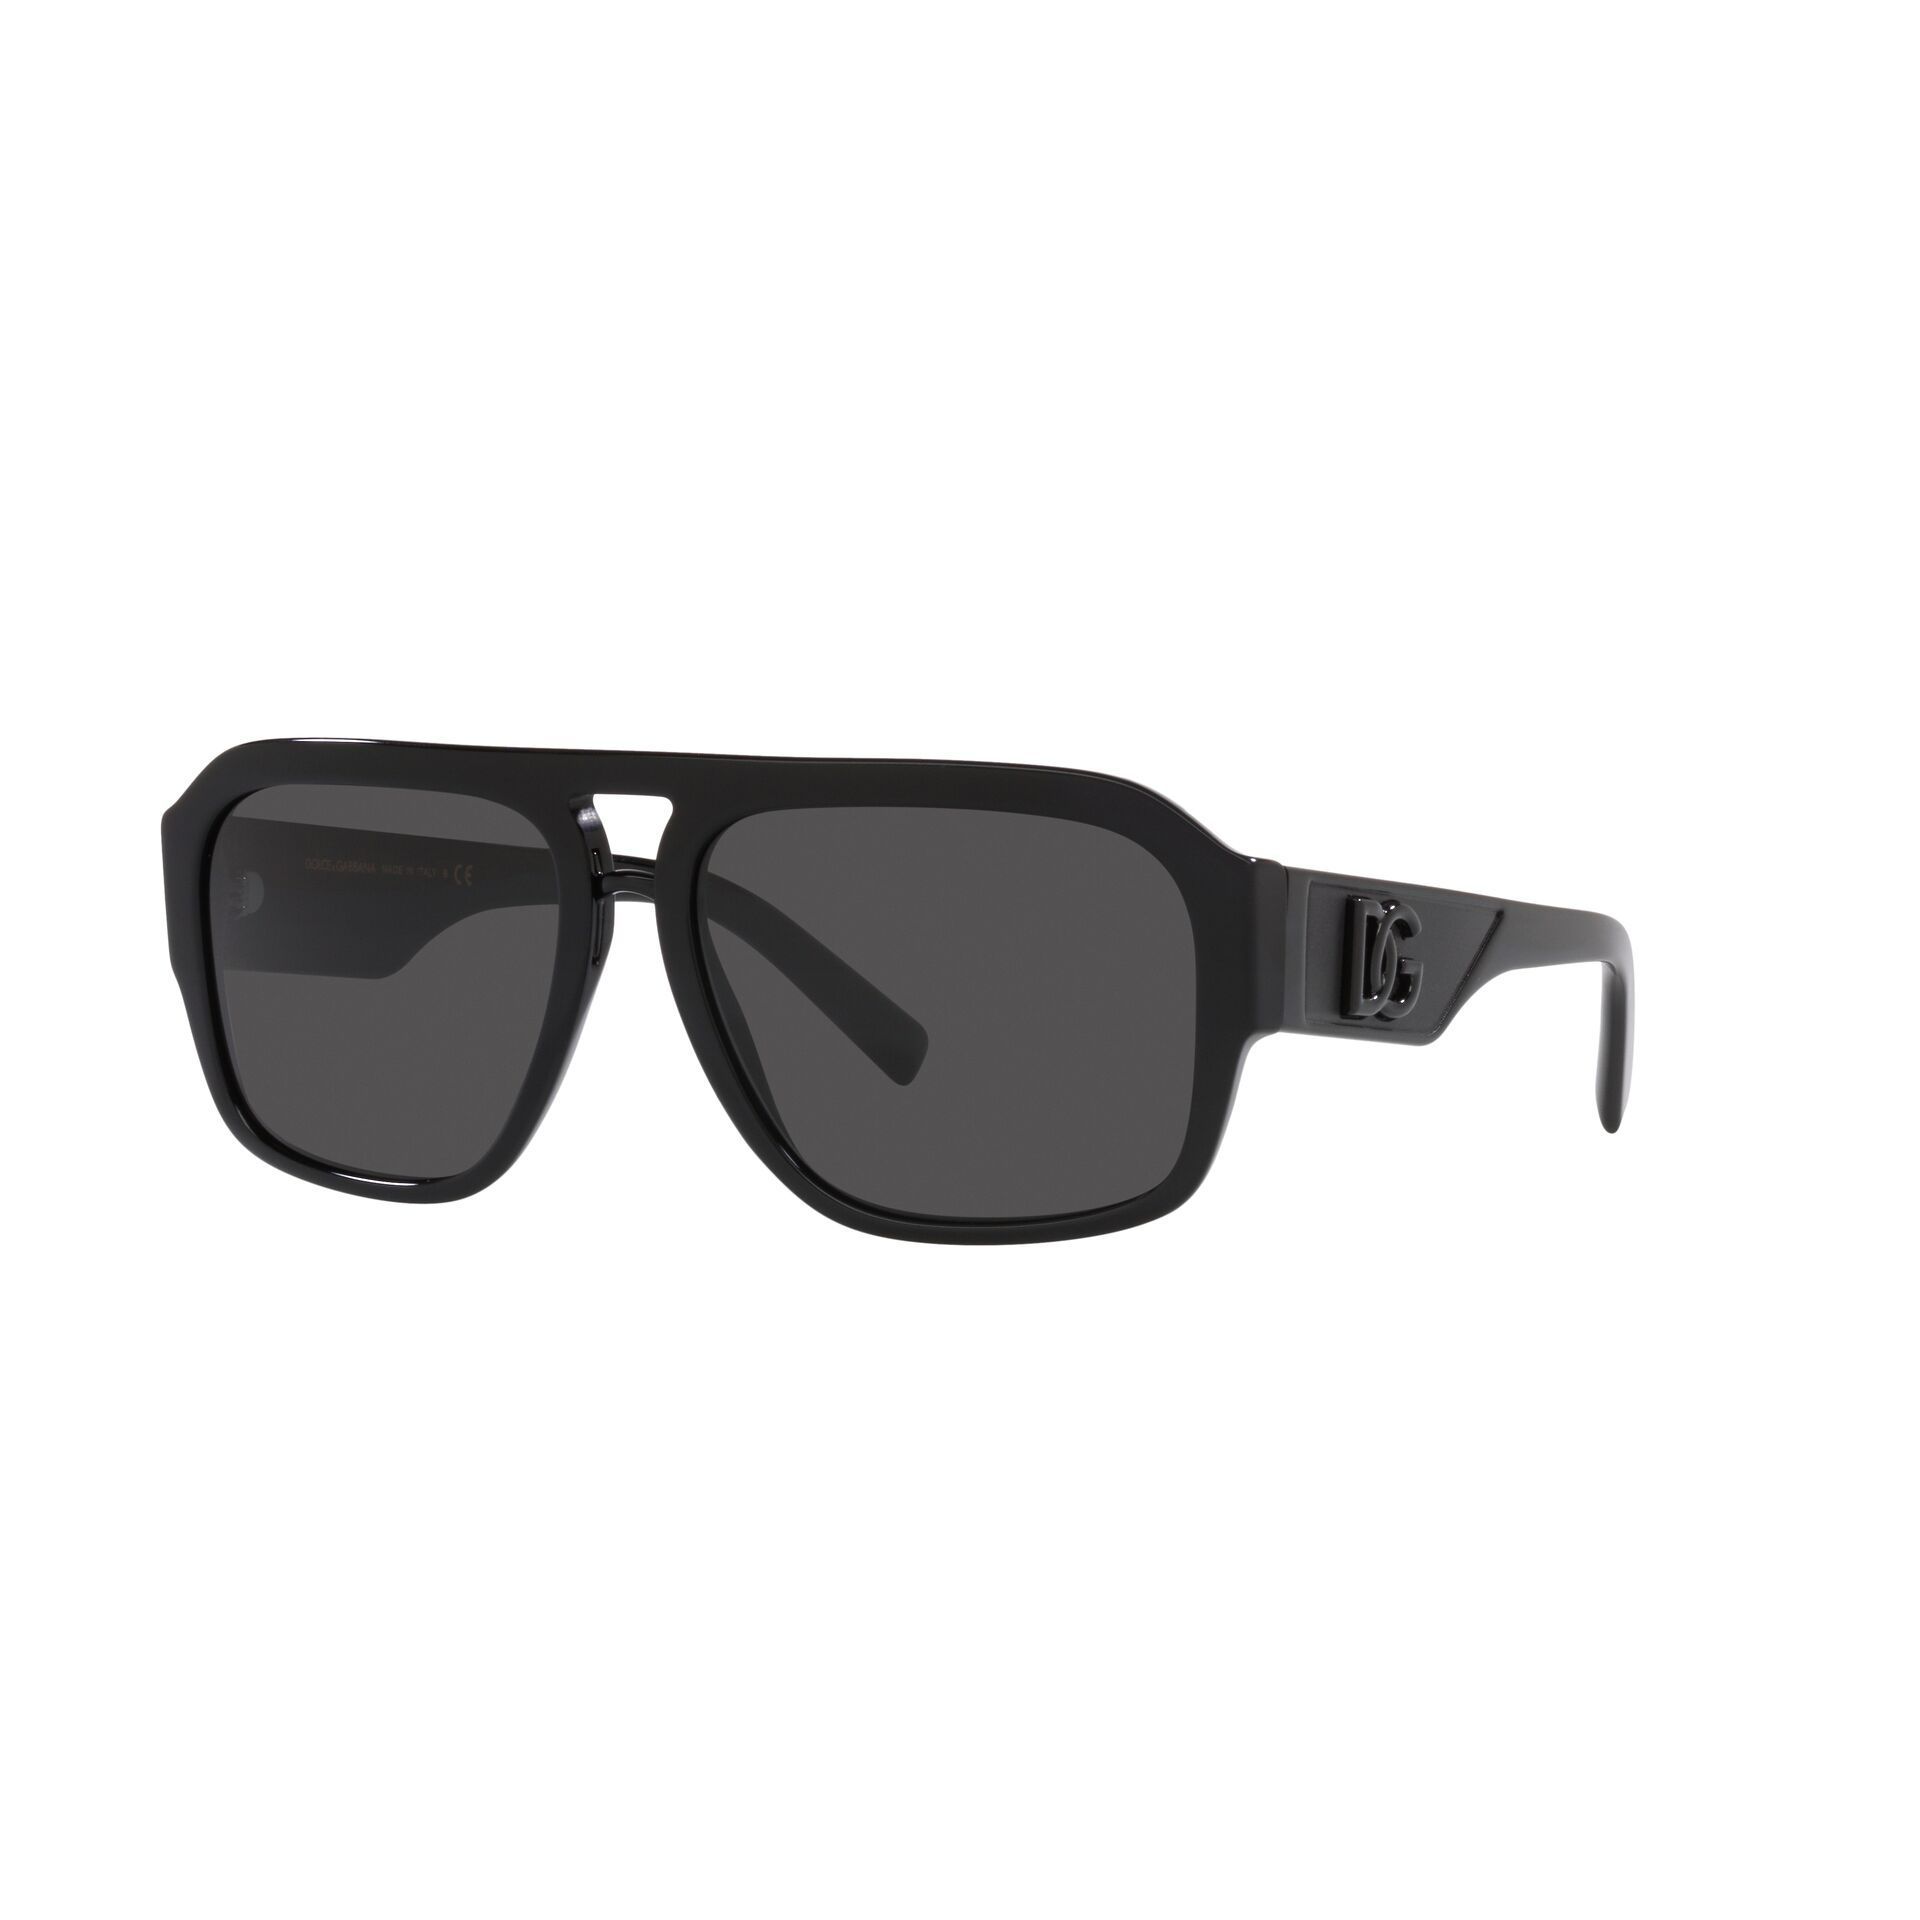 DG4403 Pilot Sunglasses 501 87 - size 58